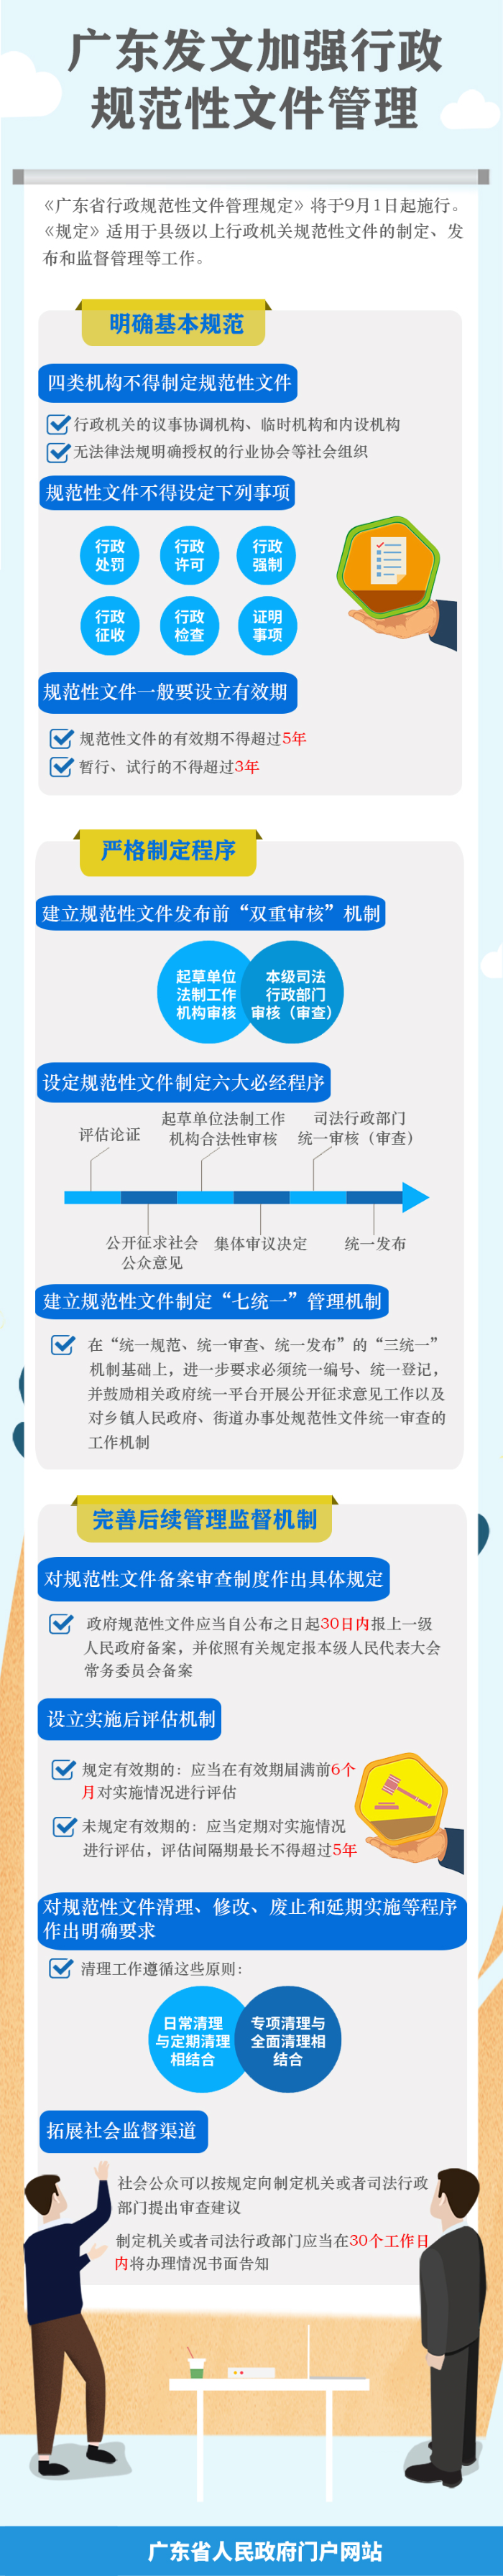 《广东省行政规范性文件管理规定》图解.jpg